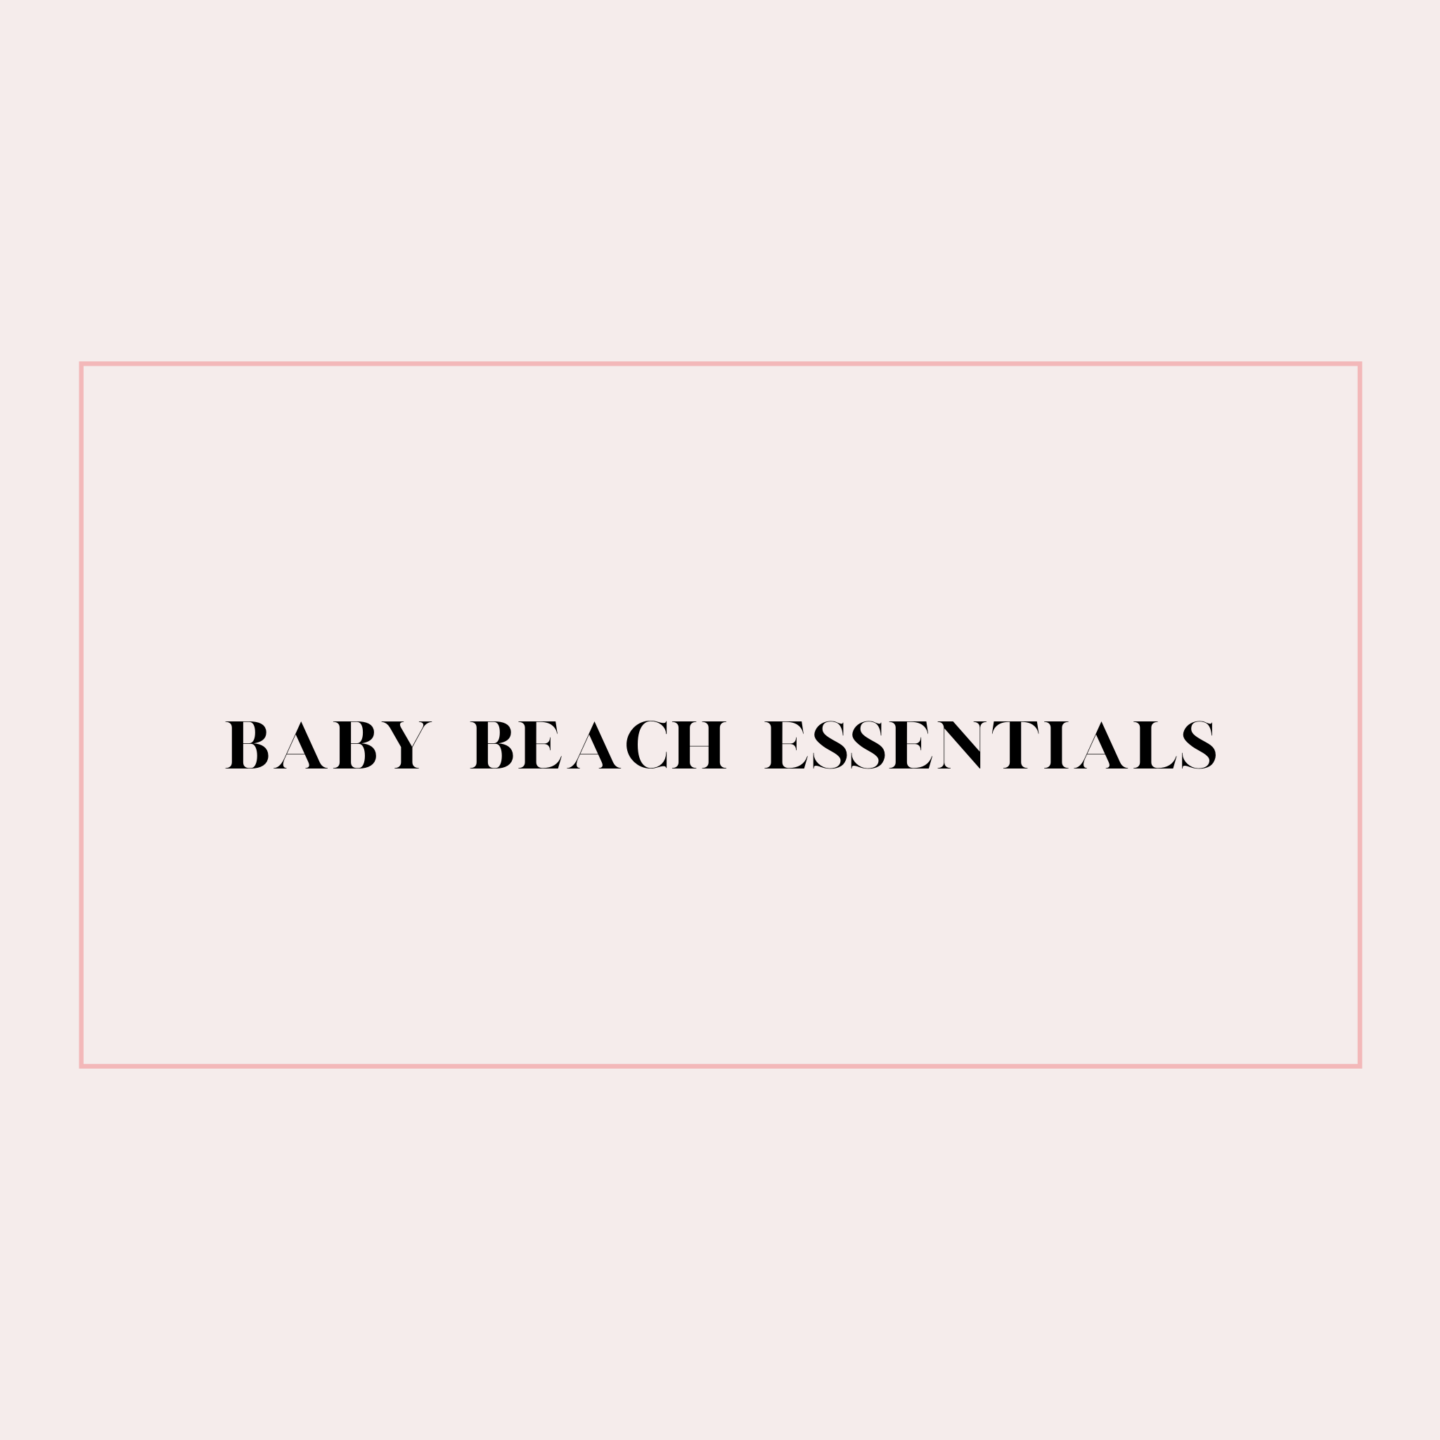 My Baby Beach Essentials